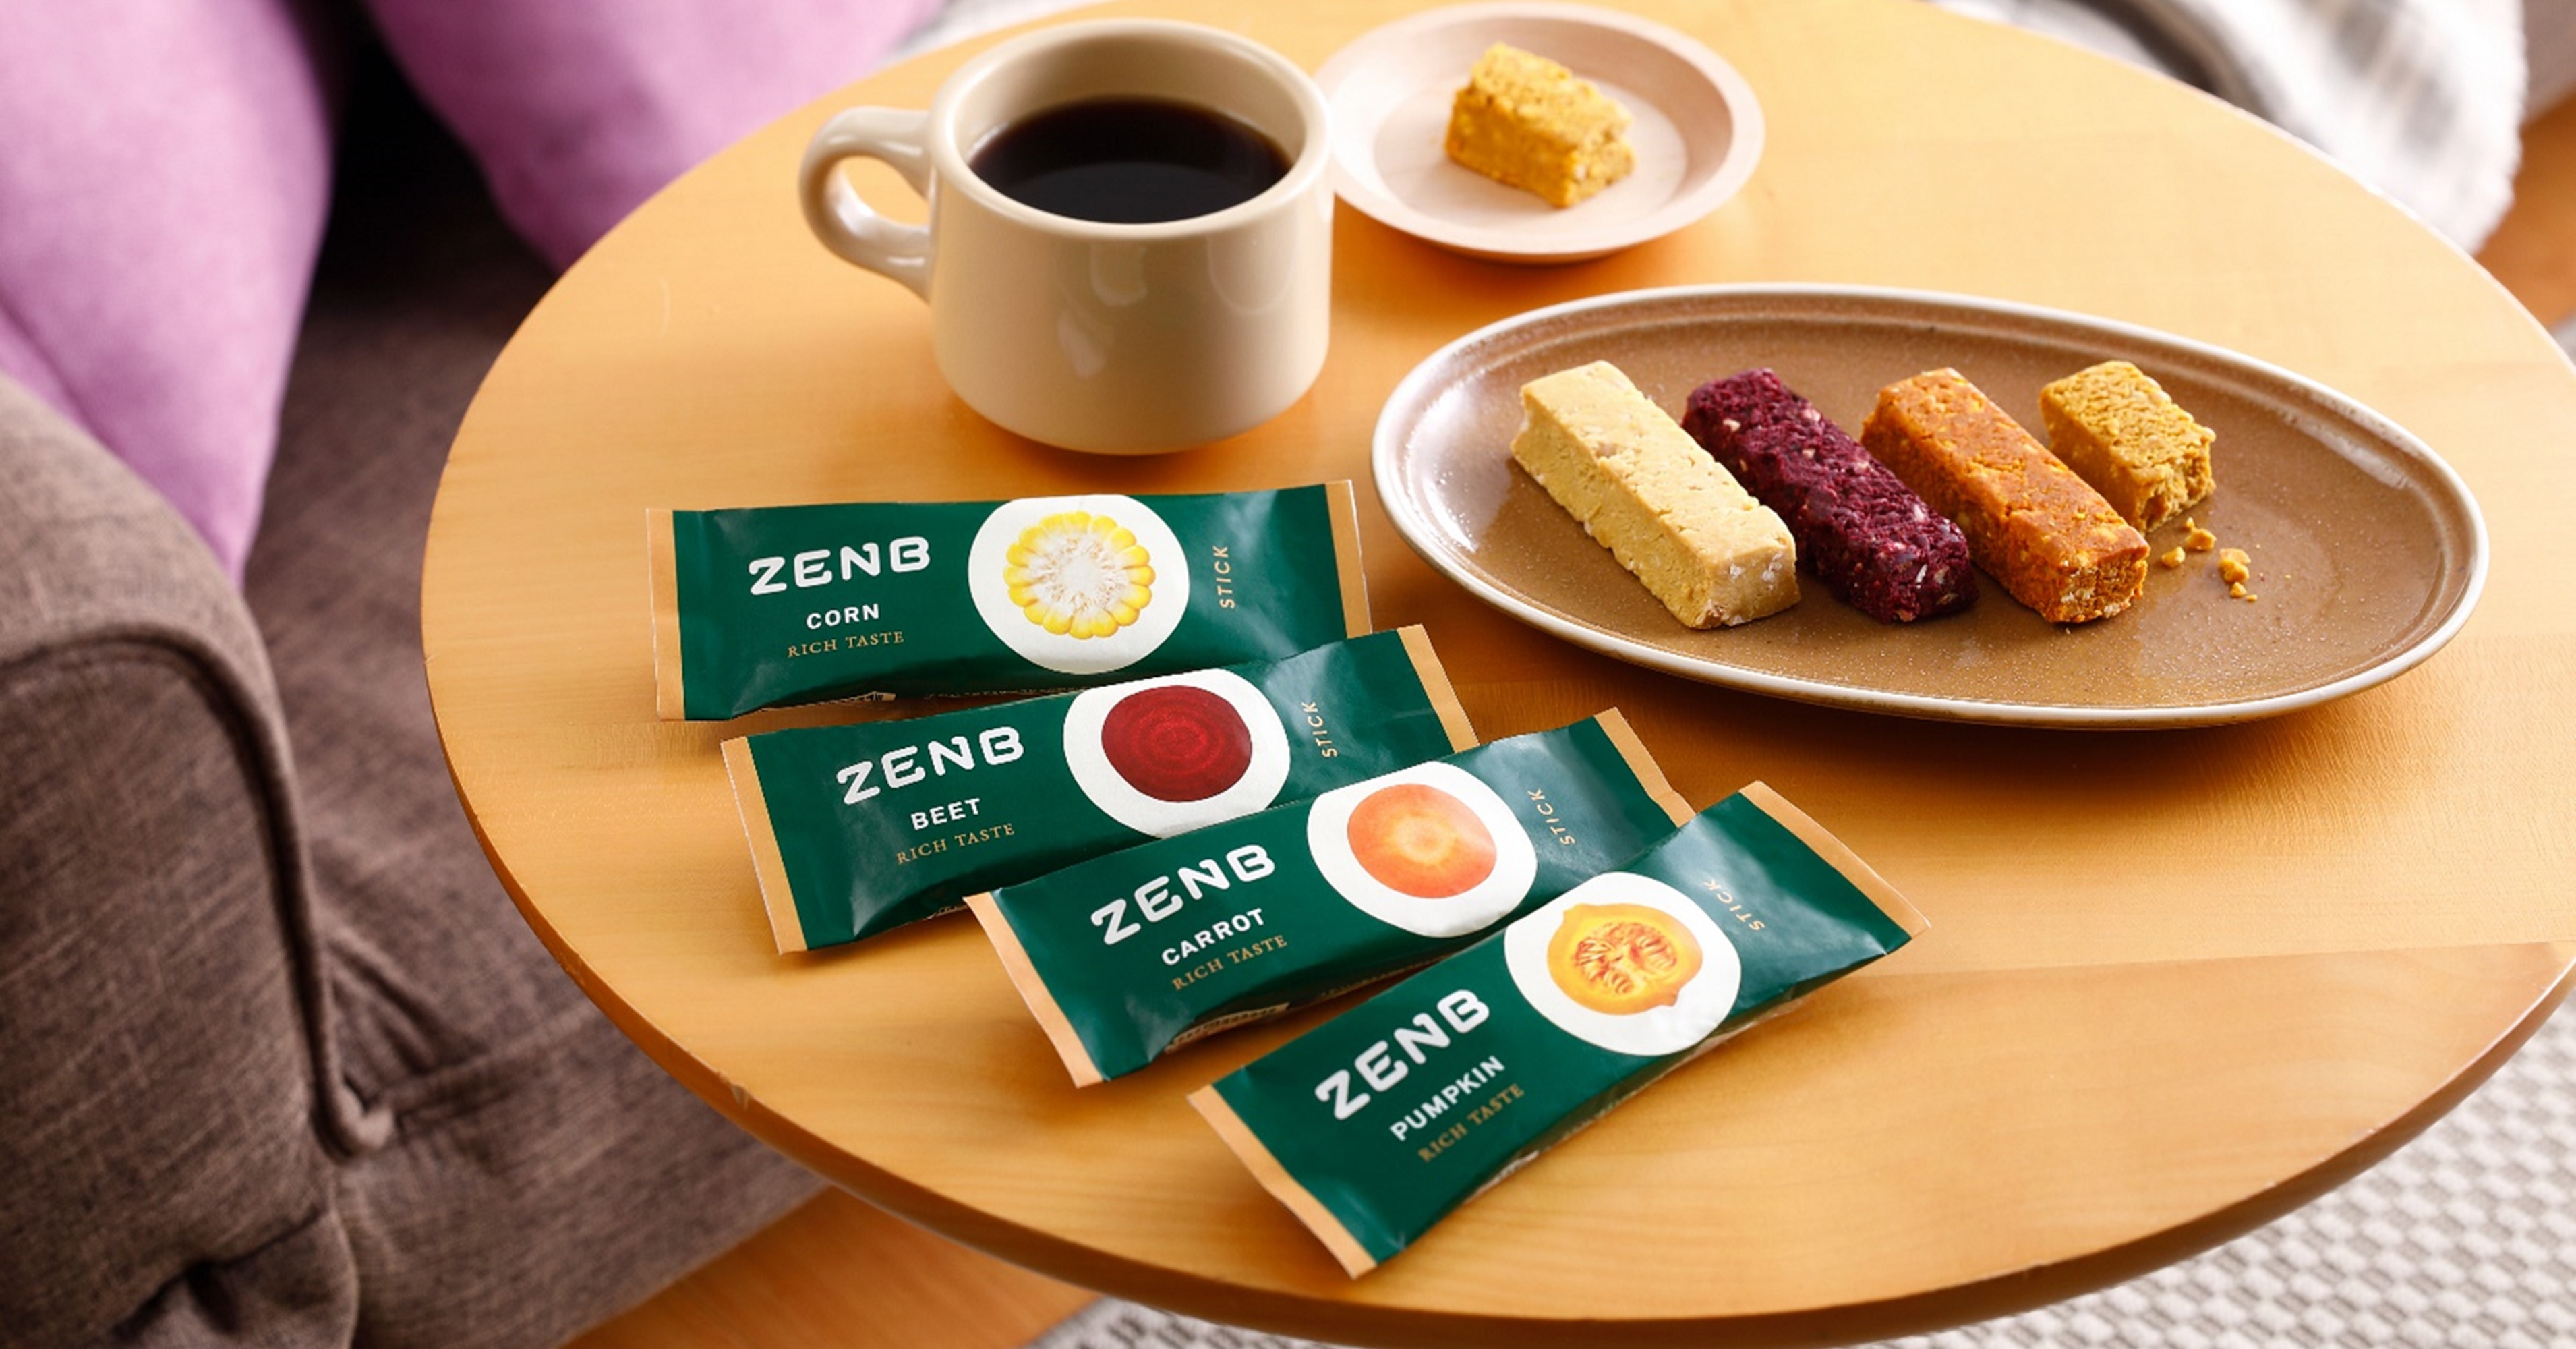 濃厚な味わいのまるごと野菜スイーツ「ZENB STICK リッチテイスト」新発売のサブ画像1